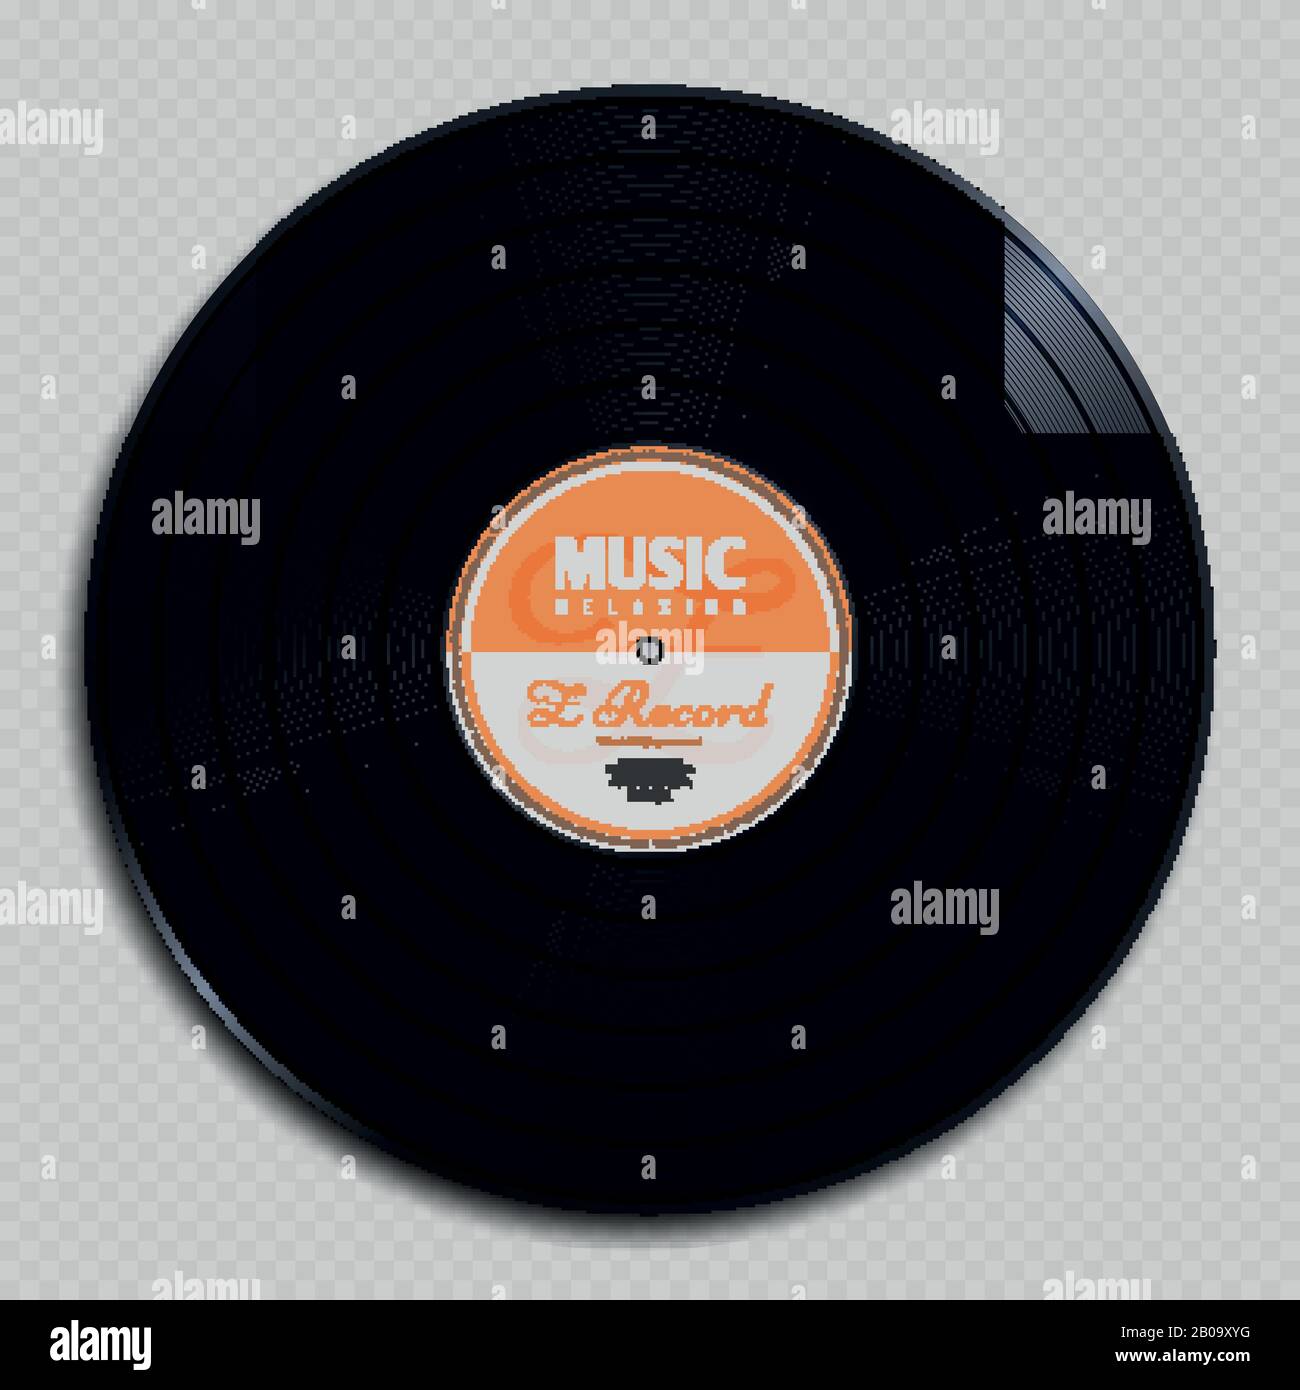 Analoge Audio-Schallplatte Vinyl Vintage Disc isoliert auf transparenter Hintergrundvektorillustration. Klassische Audio-Kunststoffscheibe für Grammophone Stock Vektor